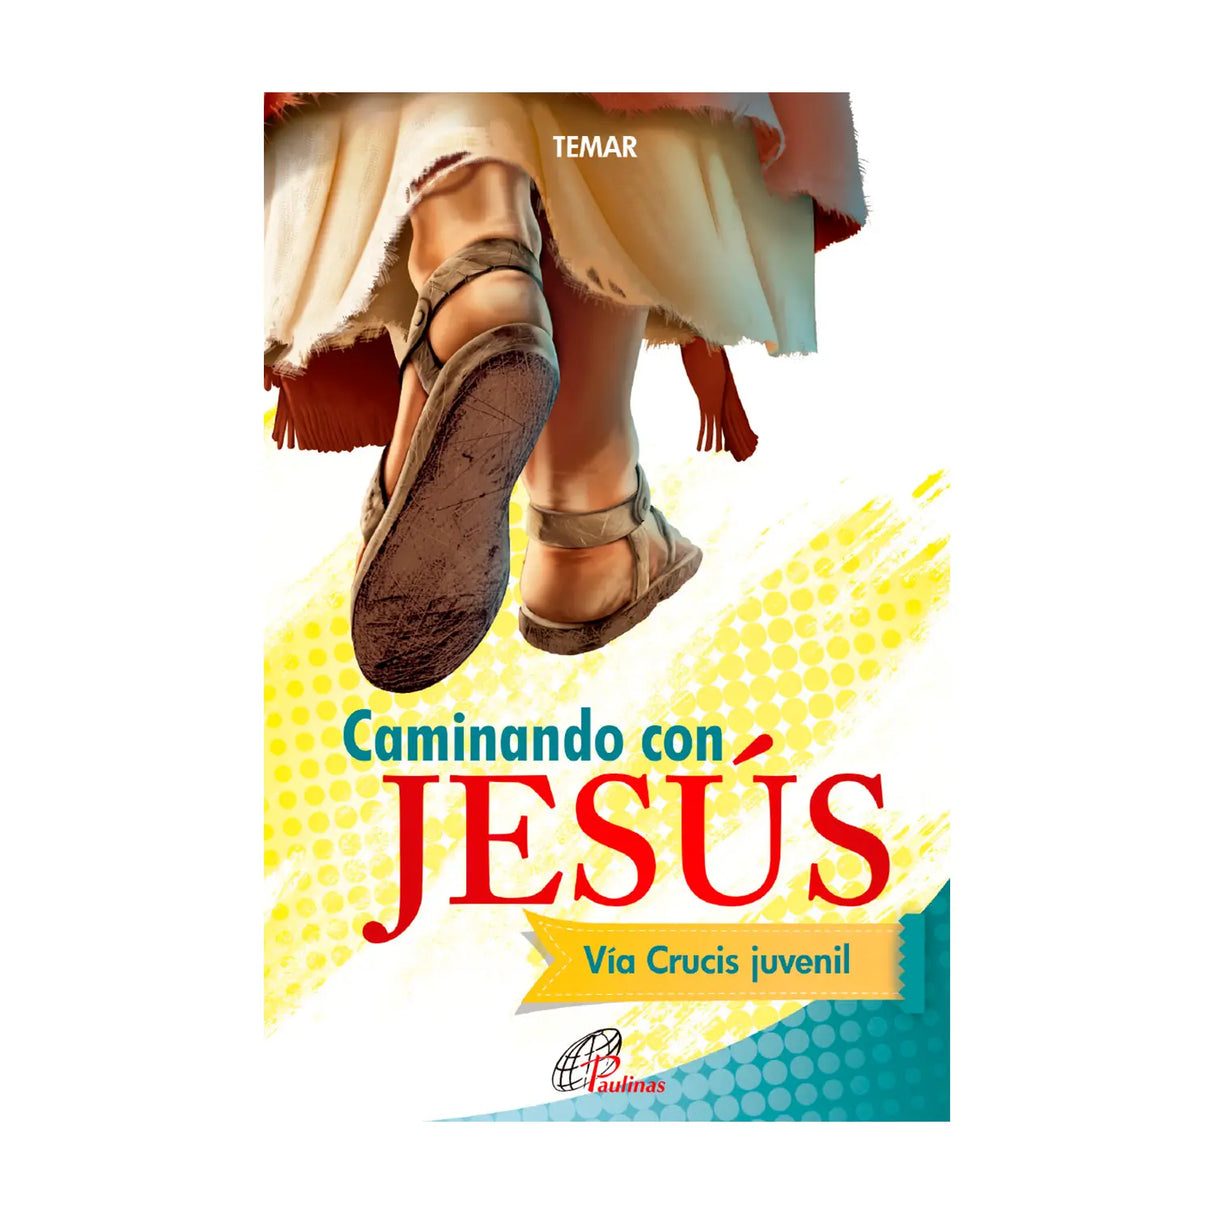 Caminando con Jesús - Vía crucis juvenil